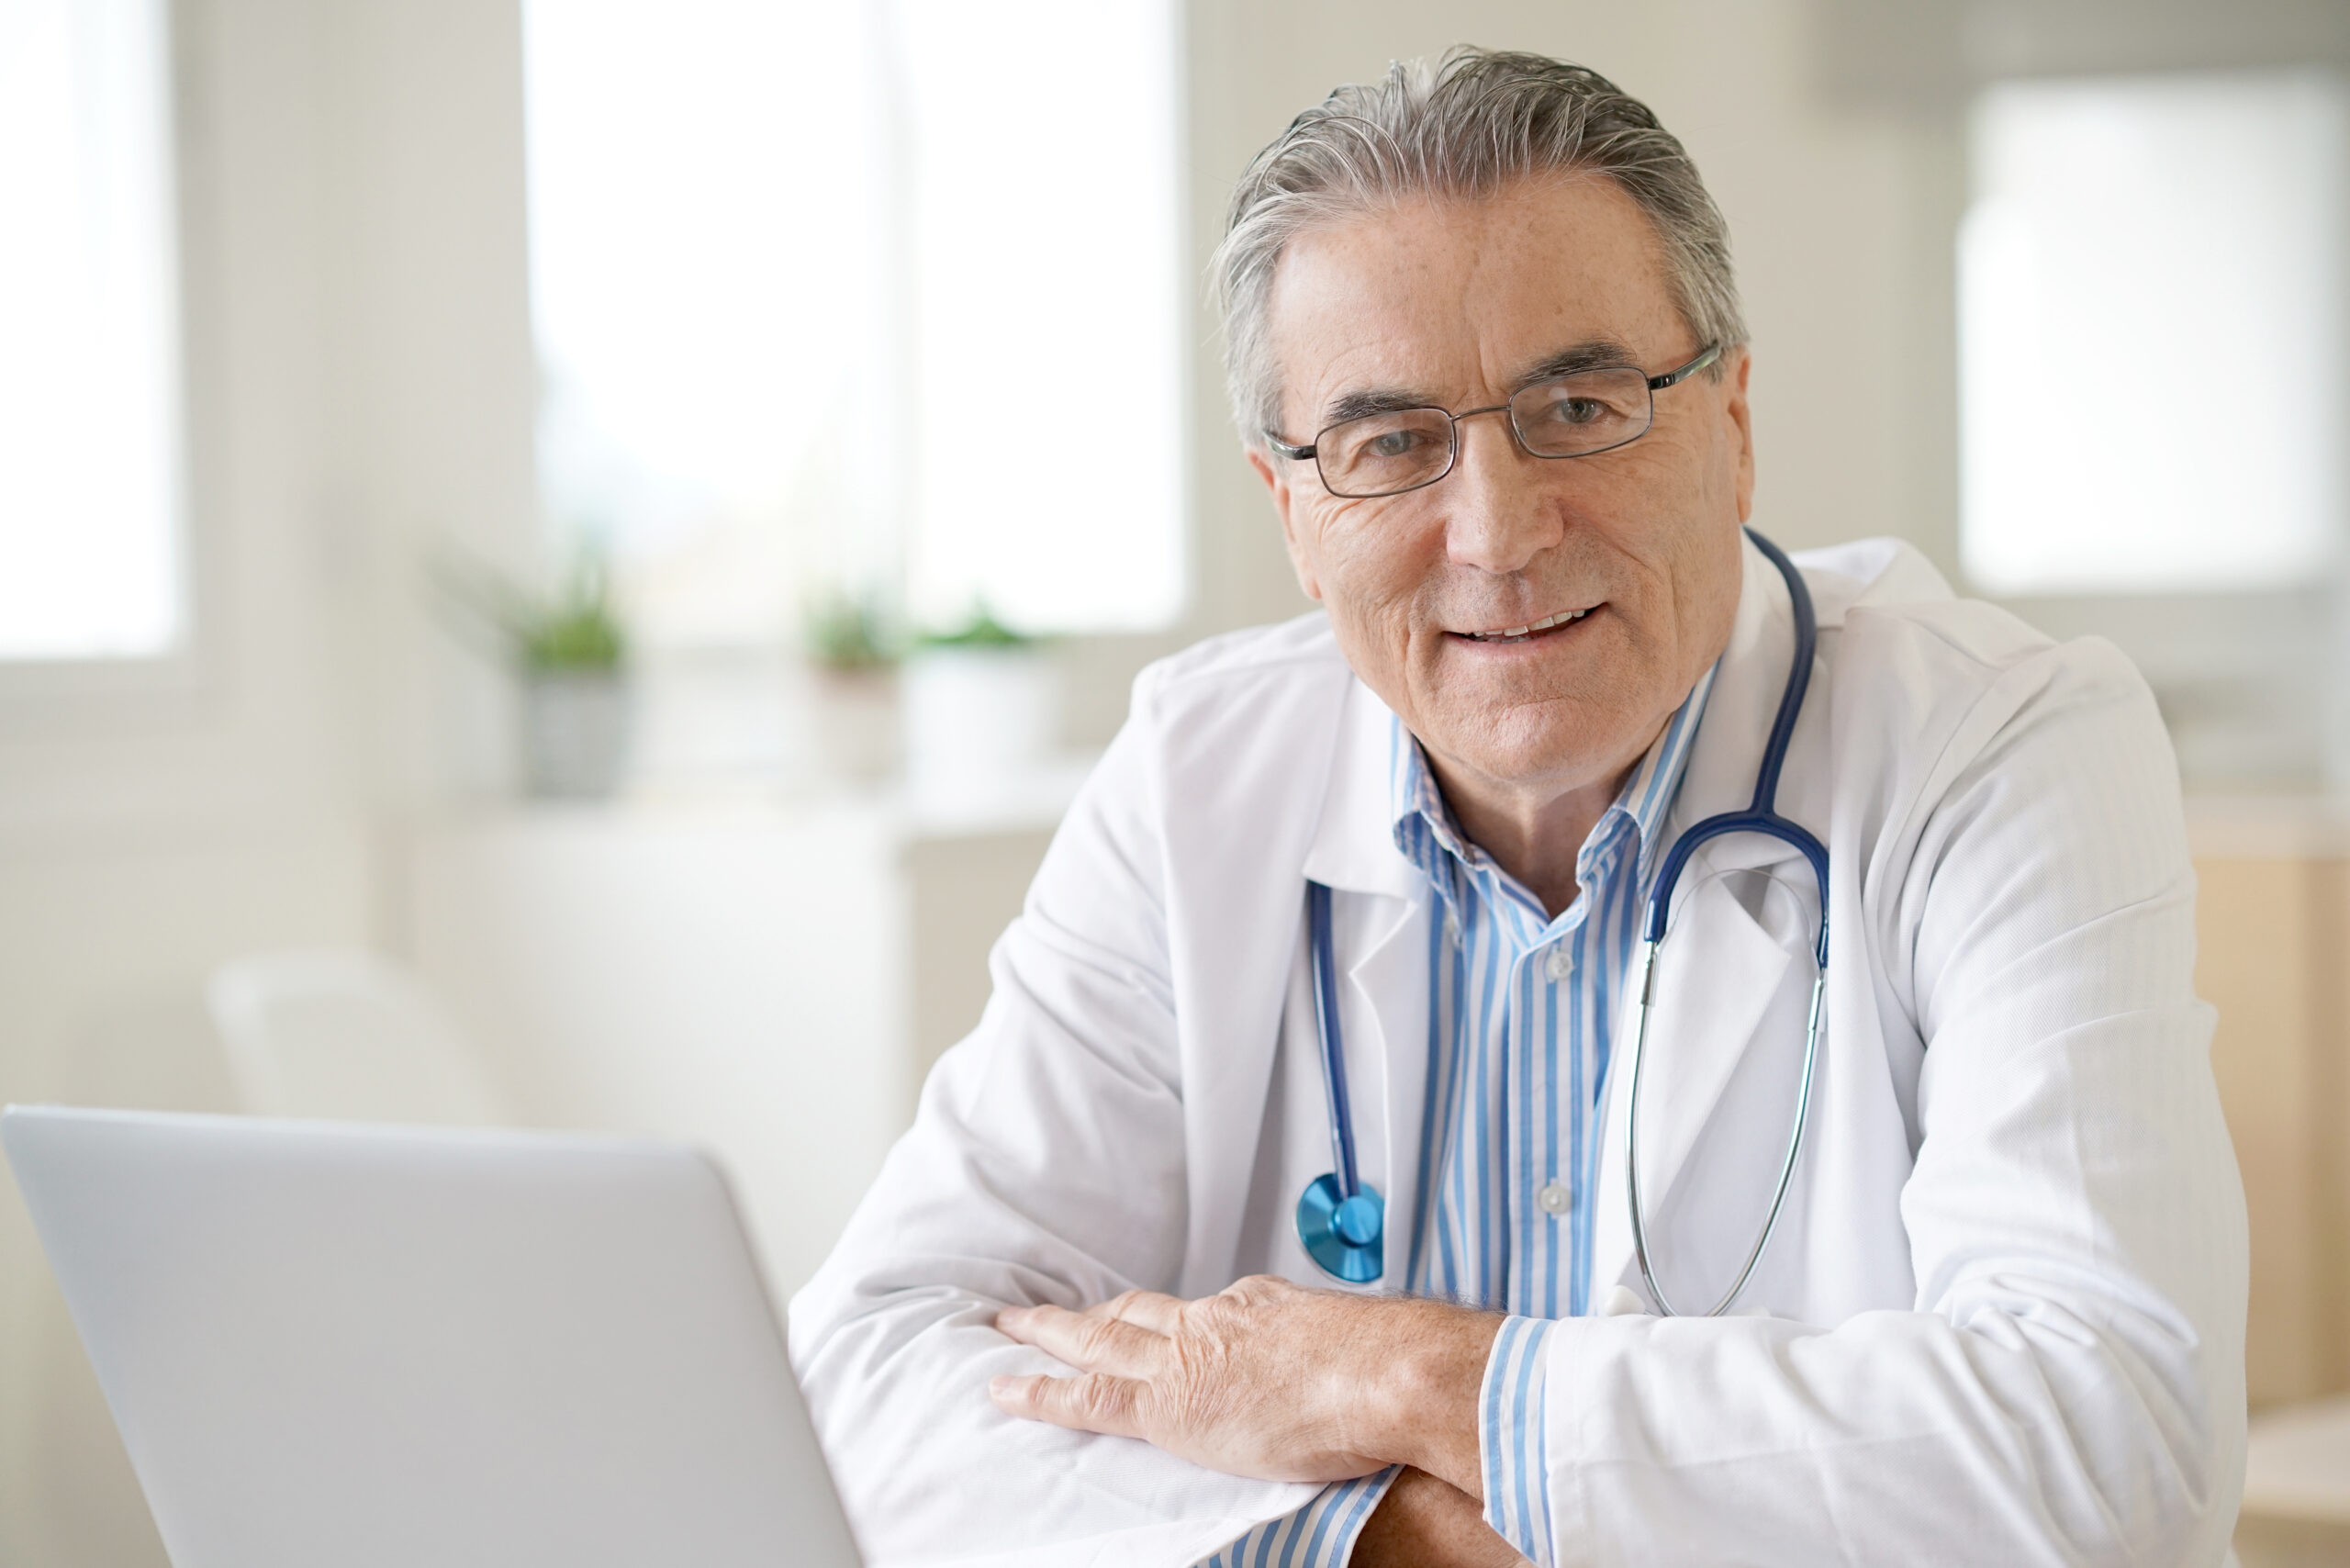 Top 5 Patient Review Sites for Doctors